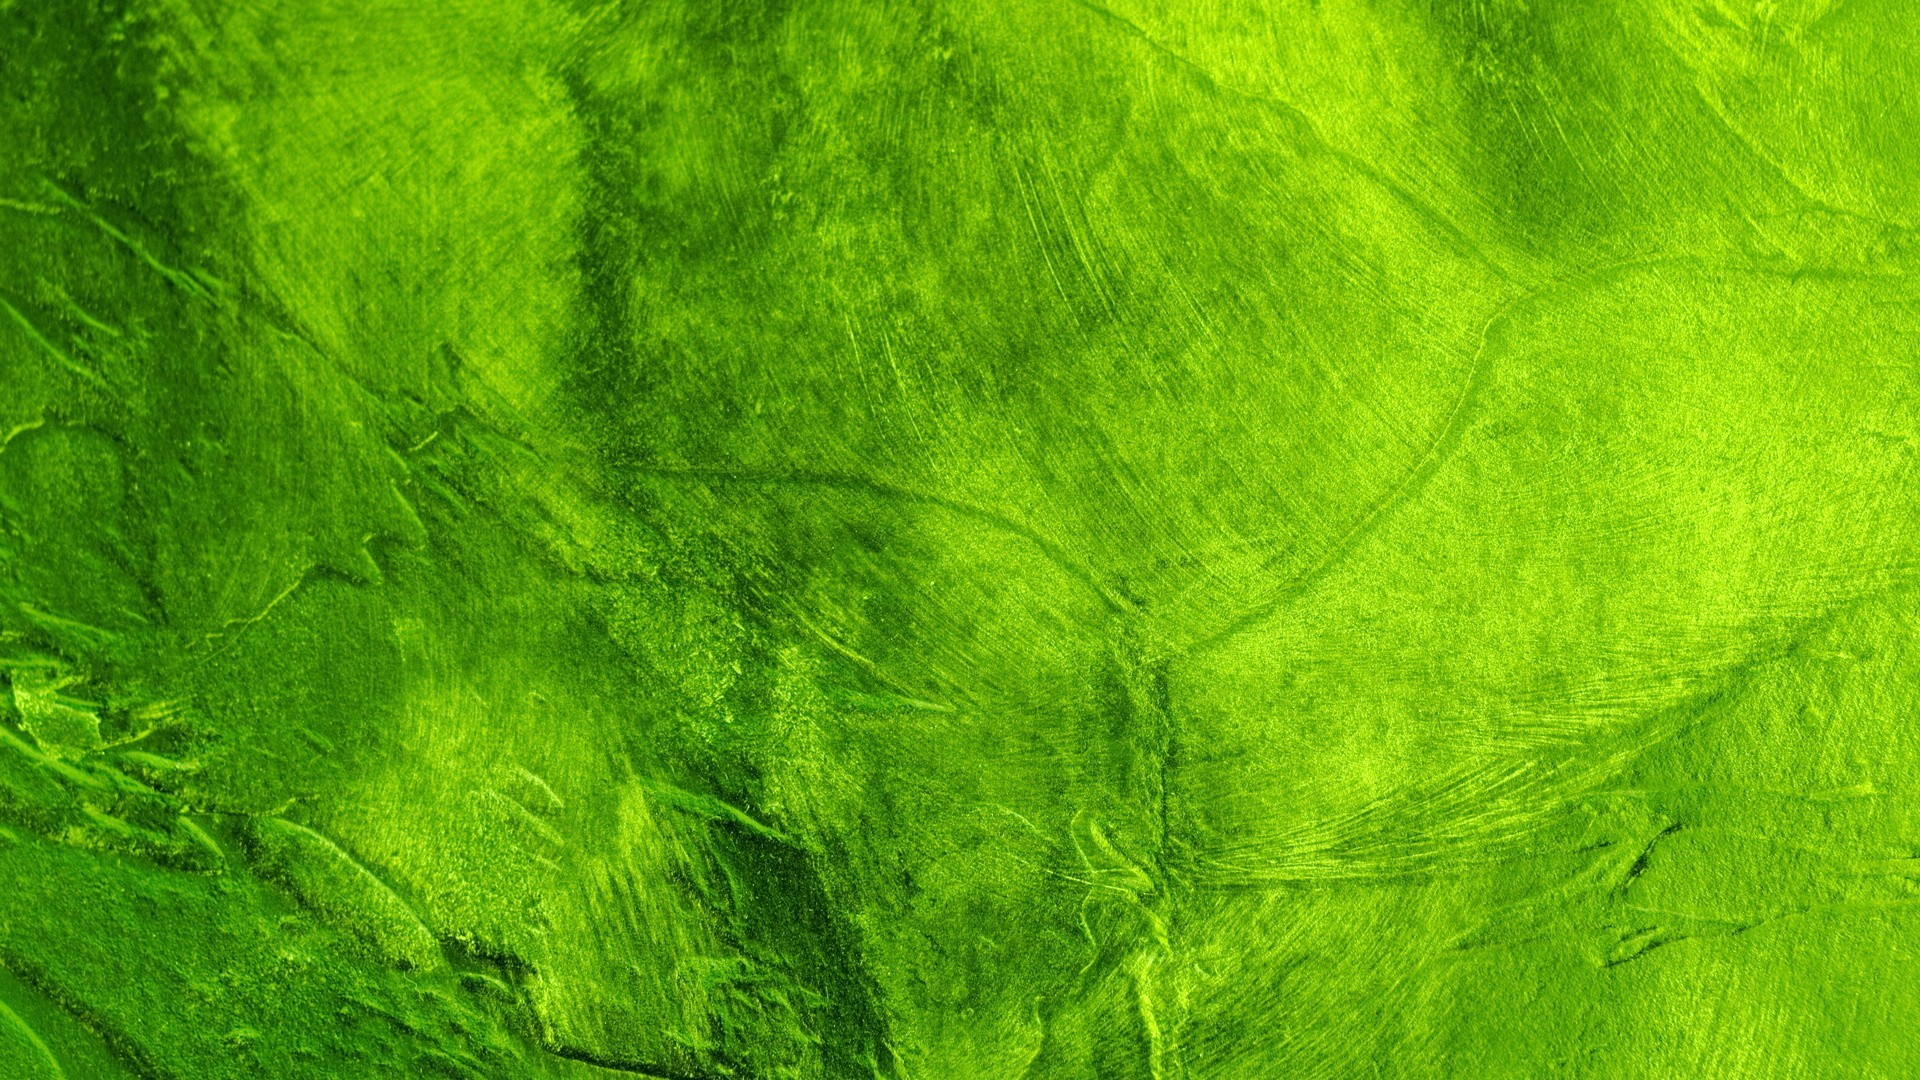 1920x1080 Abstract green network Wallpaper Pinterest Green wallpaper